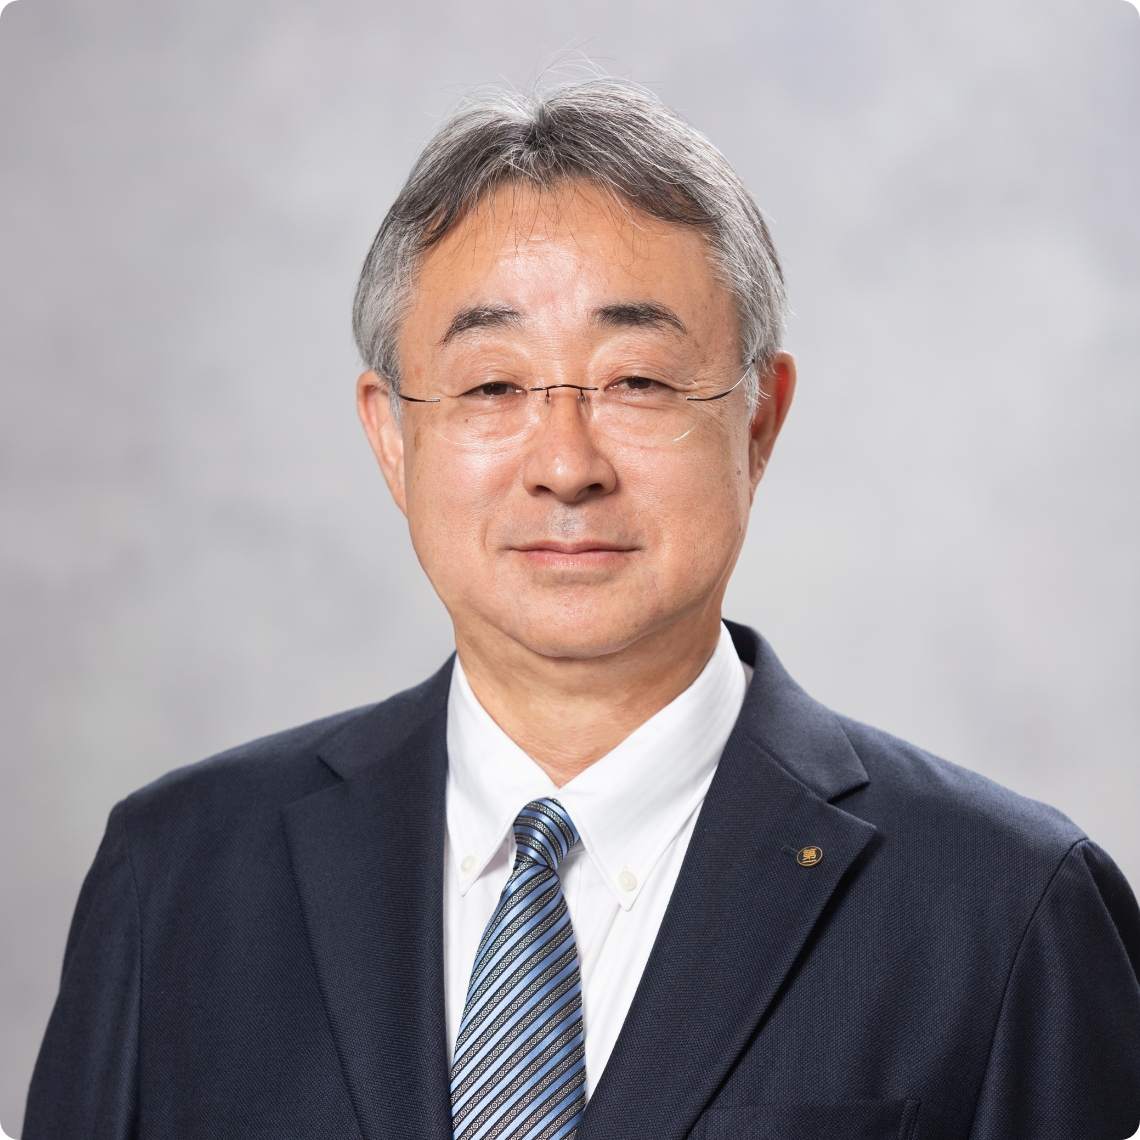 第一交通産業株式会社グループ本社代表取締役社長 田中 亮一郎 Tanaka Ryoichiro